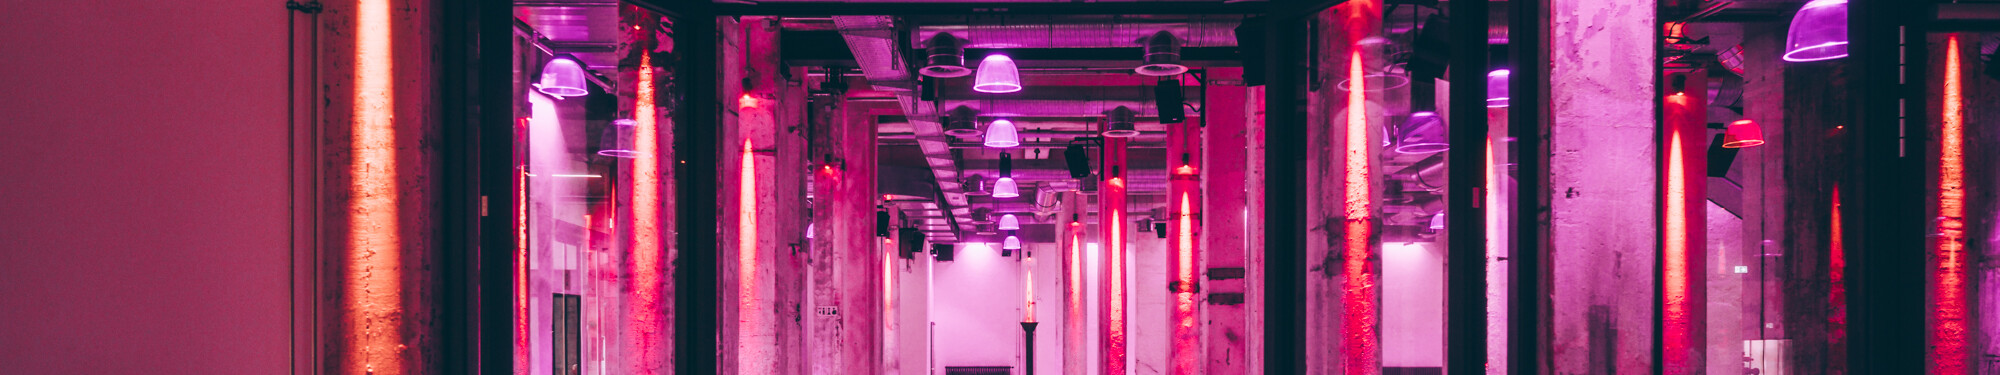 Die Stützpfeiler im Foyer der Grand Hall Zollverein in Essen sind mit rotem und violettem Neonlicht beleuchtet.  